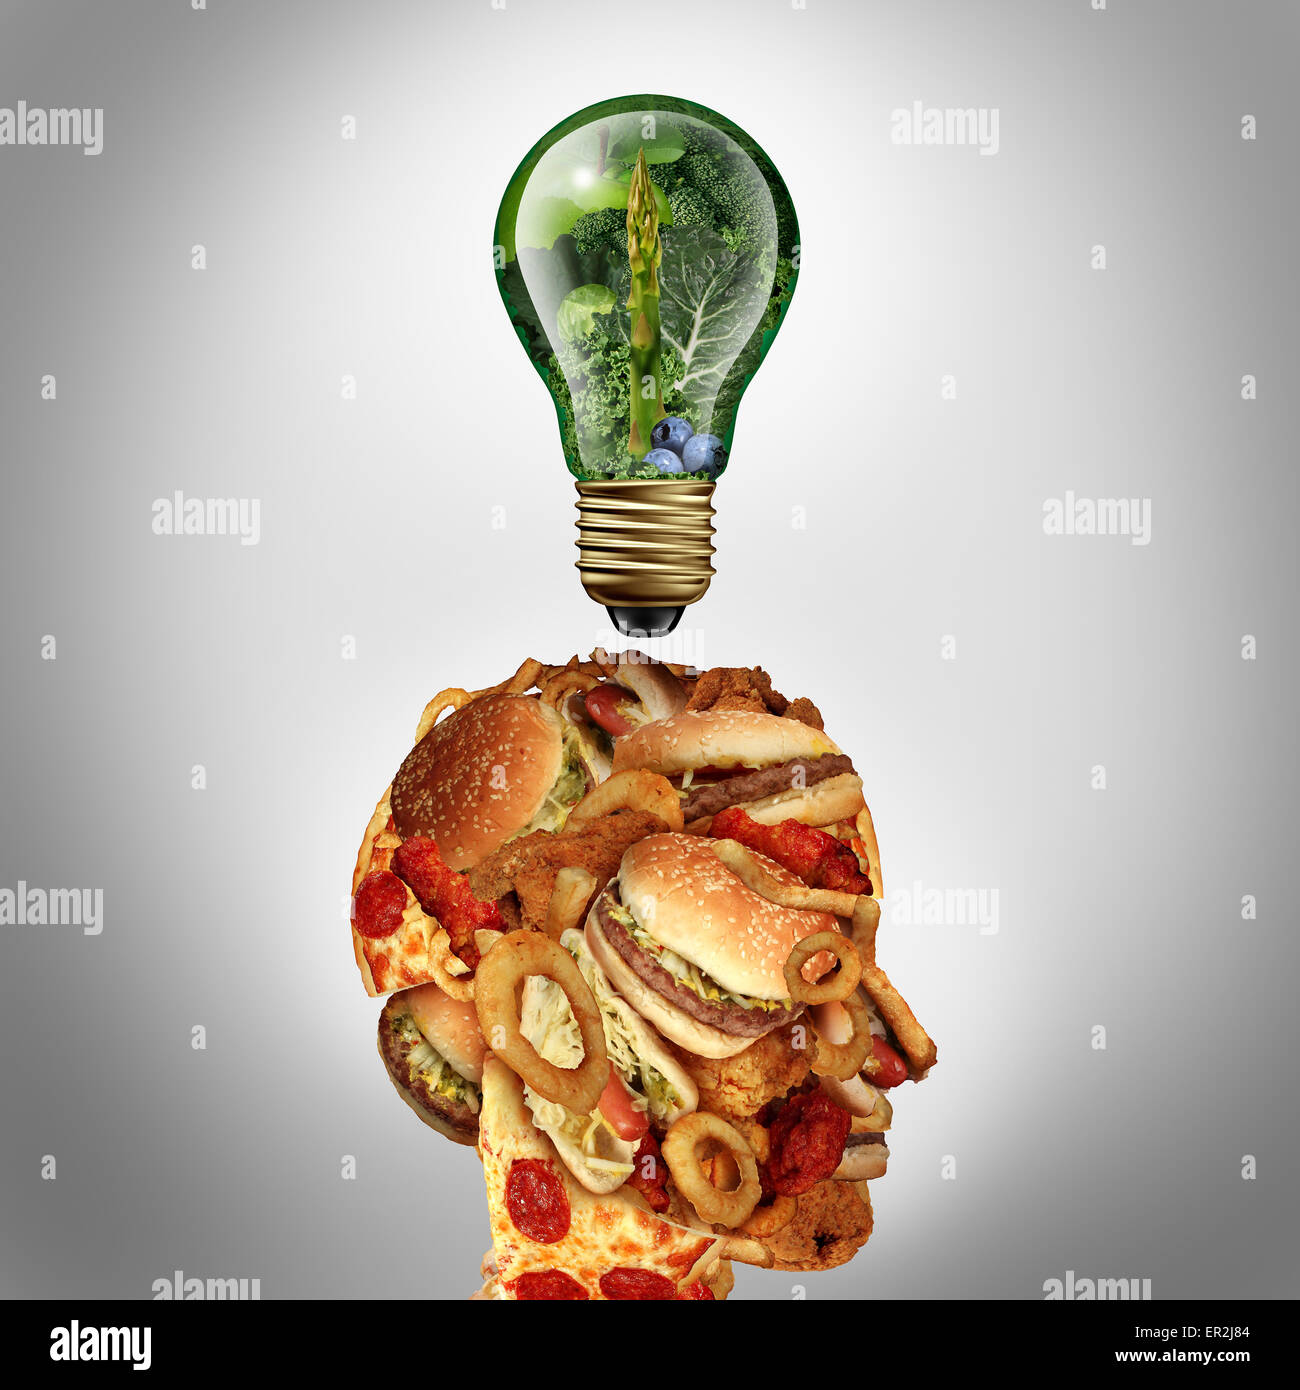 La motivation et l'inspiration de suivre un régime diététique concept comme une tête humaine faite de malbouffe grasse avec une ampoule idée réalisé Banque D'Images